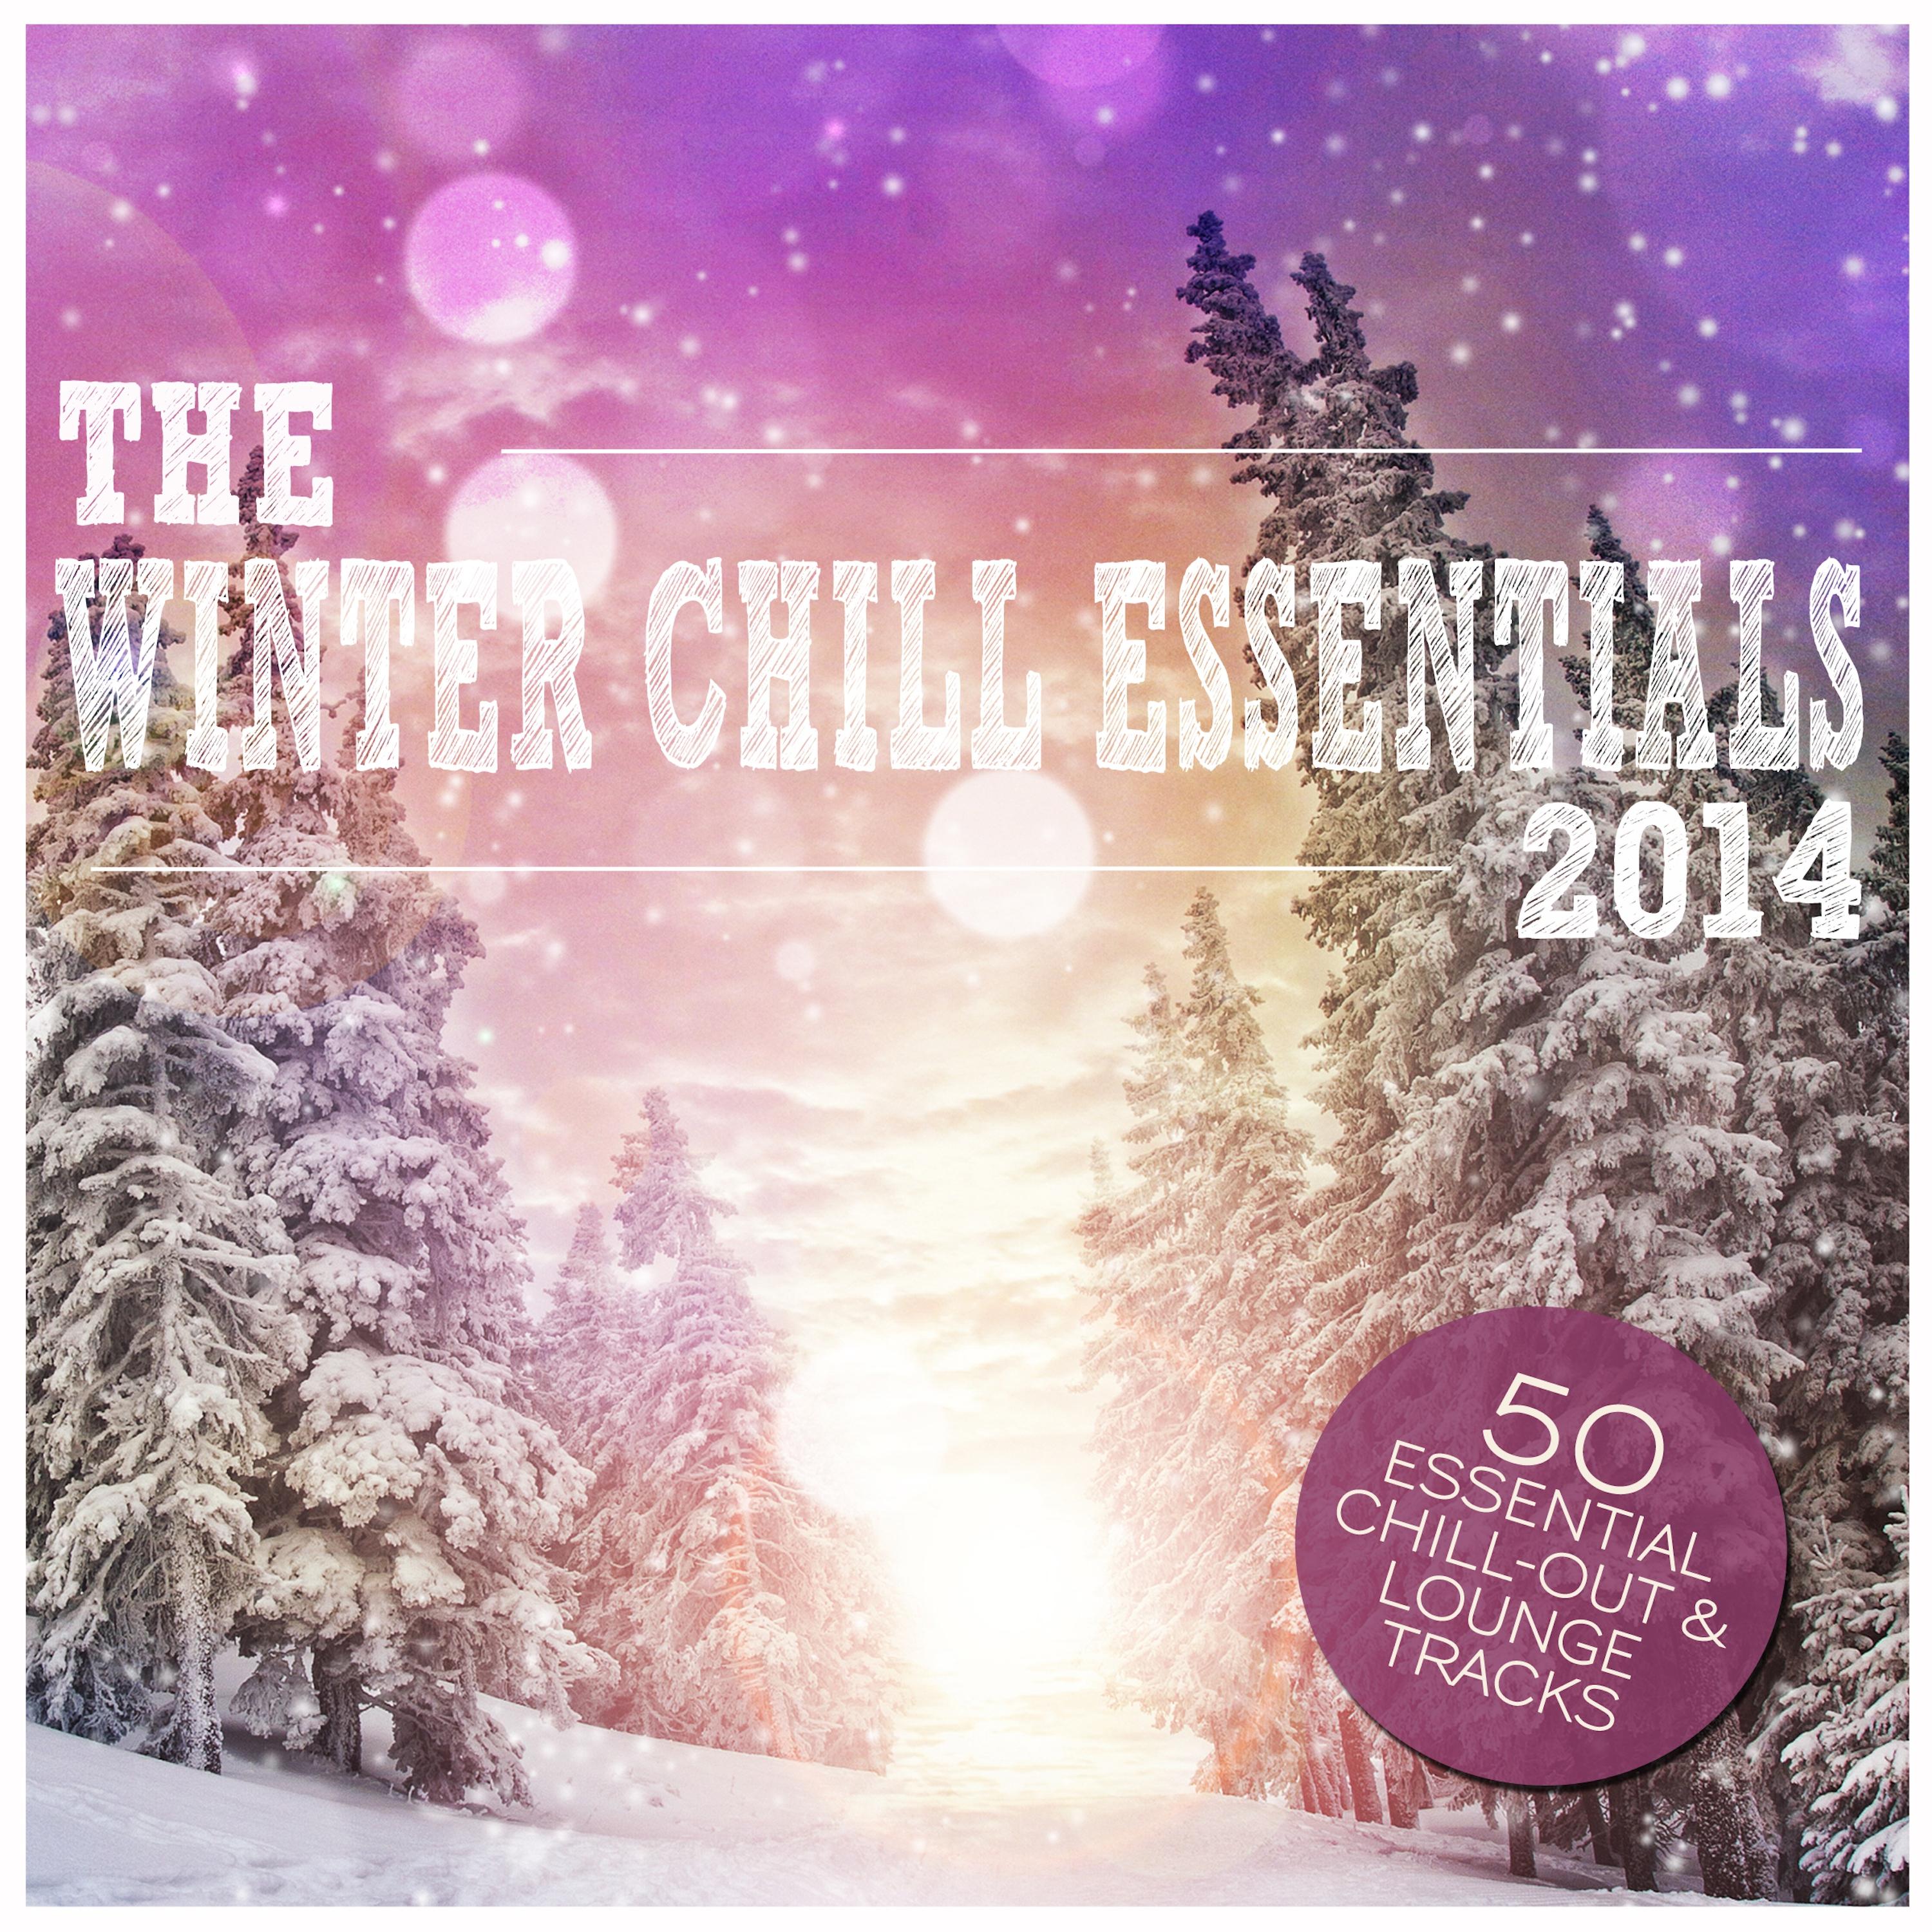 The Winter Chill Essentials 2014